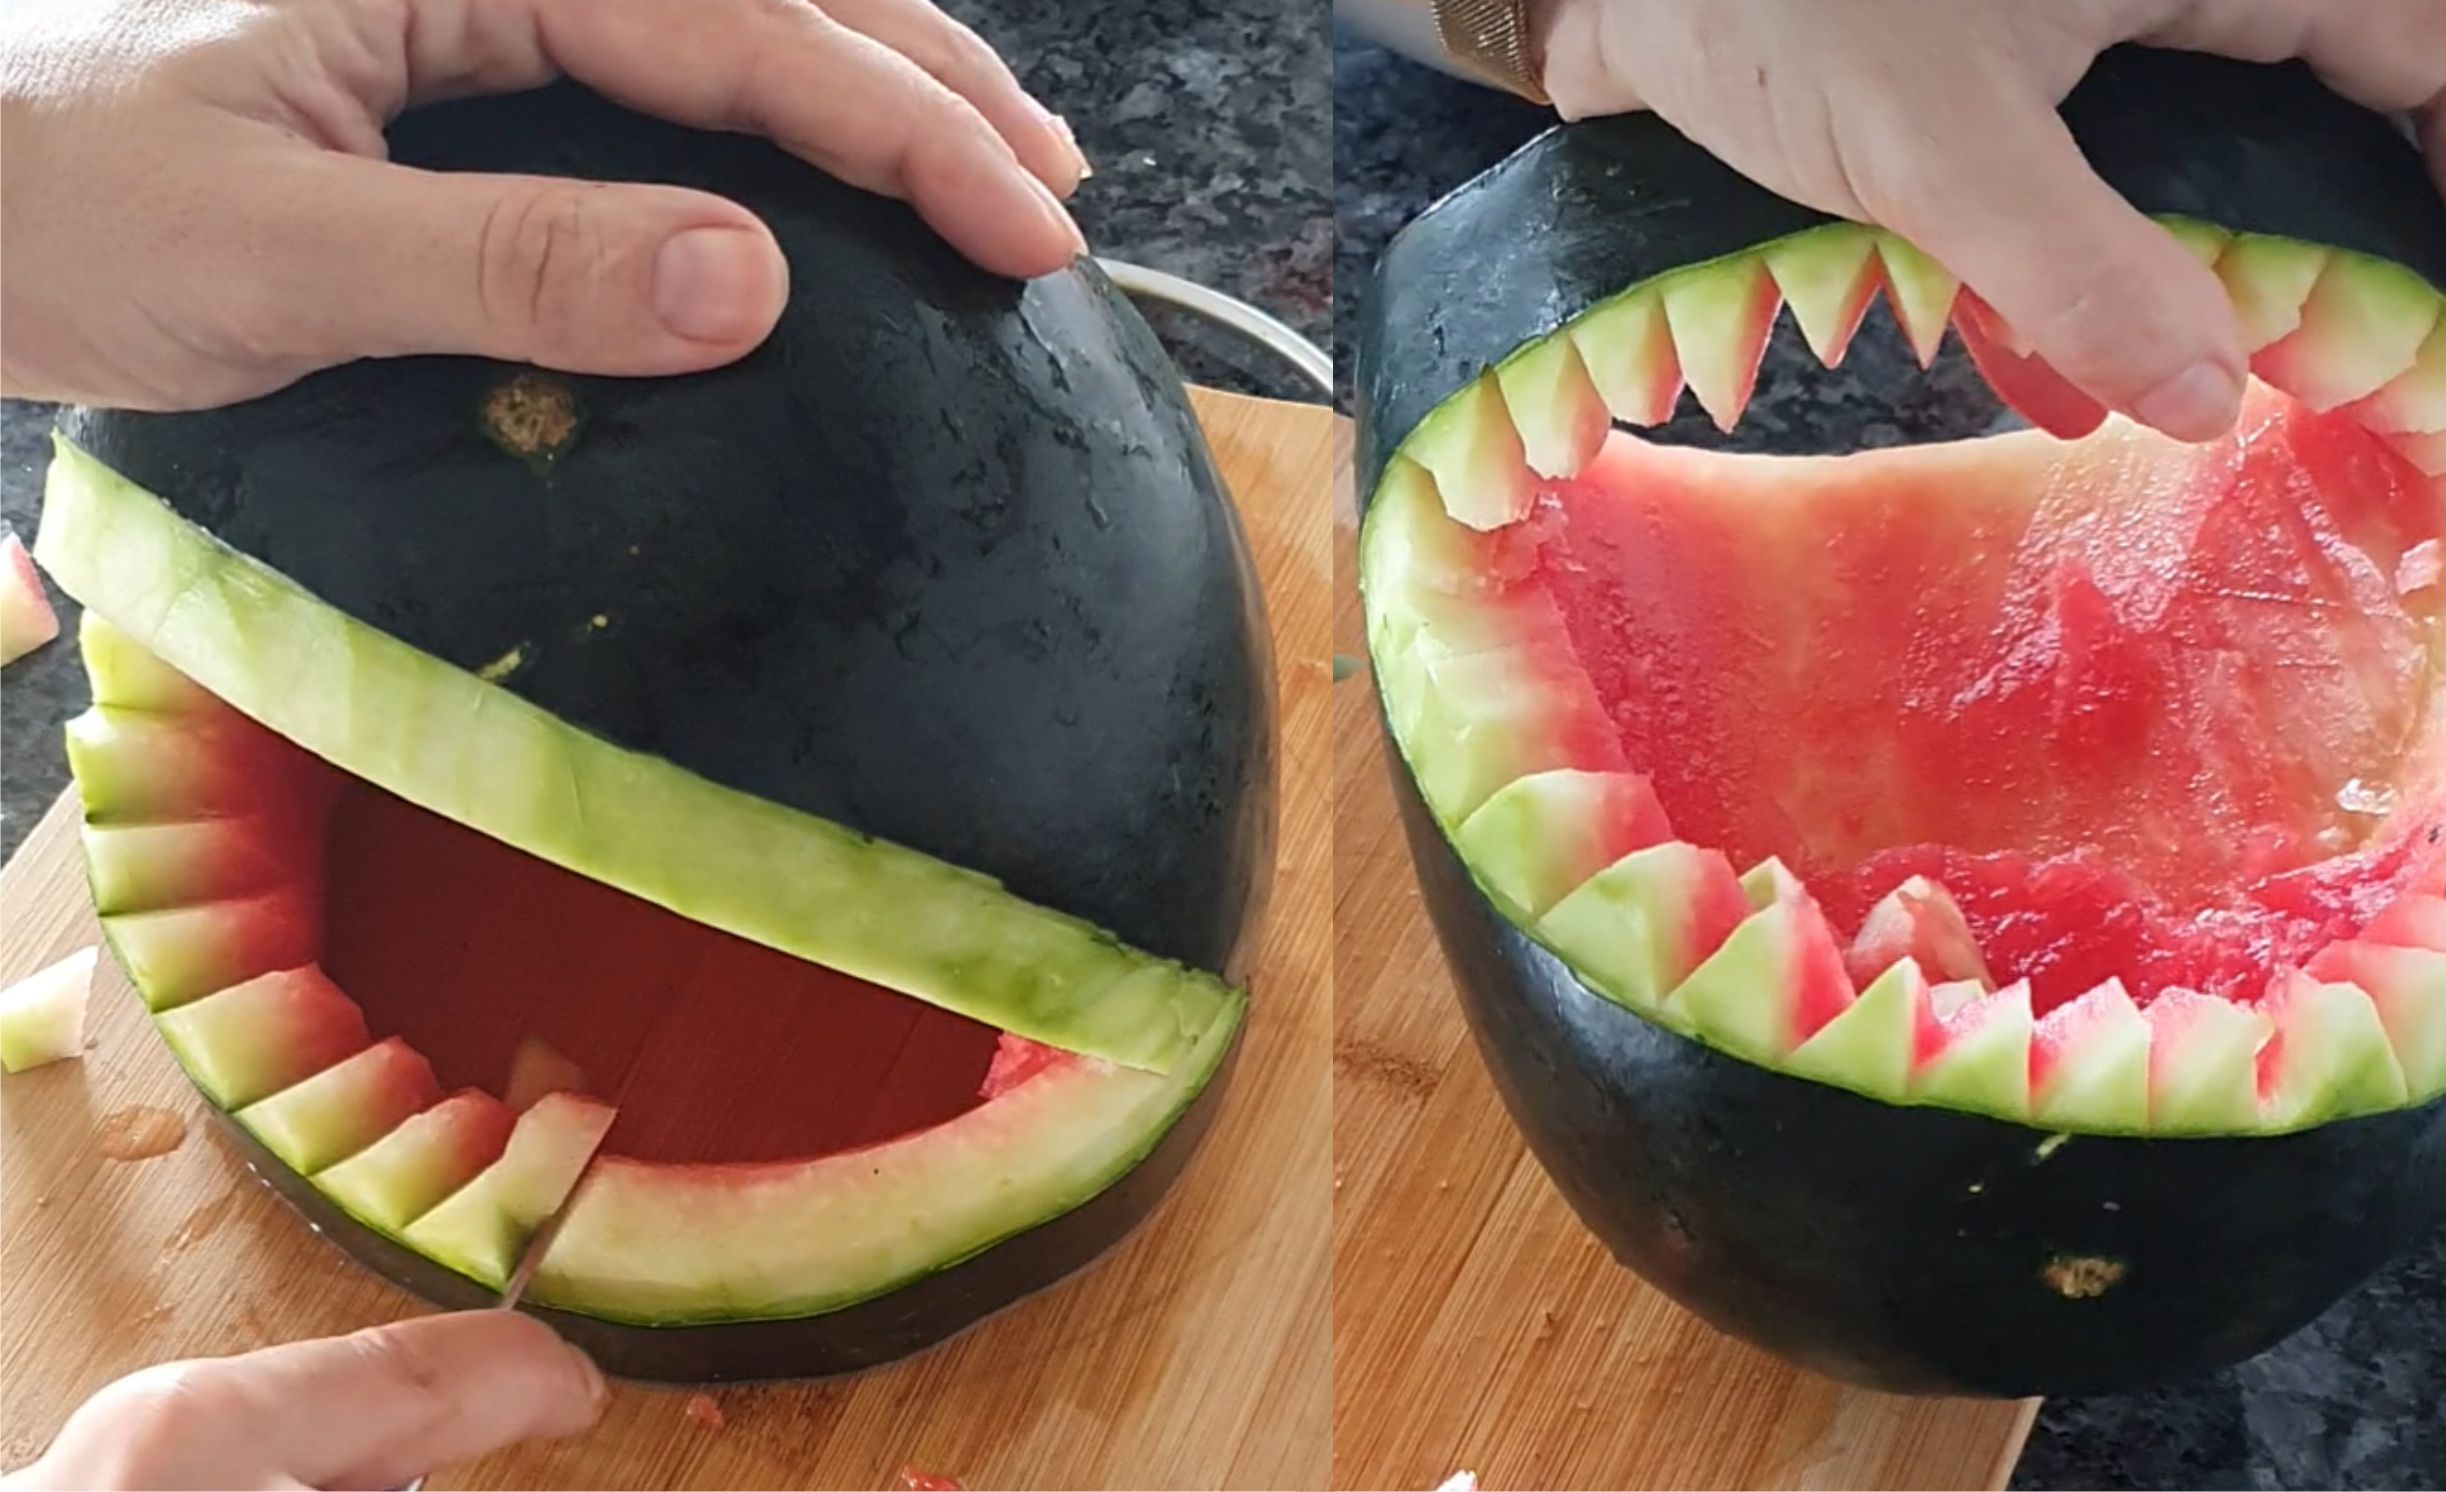 Watermelon shark